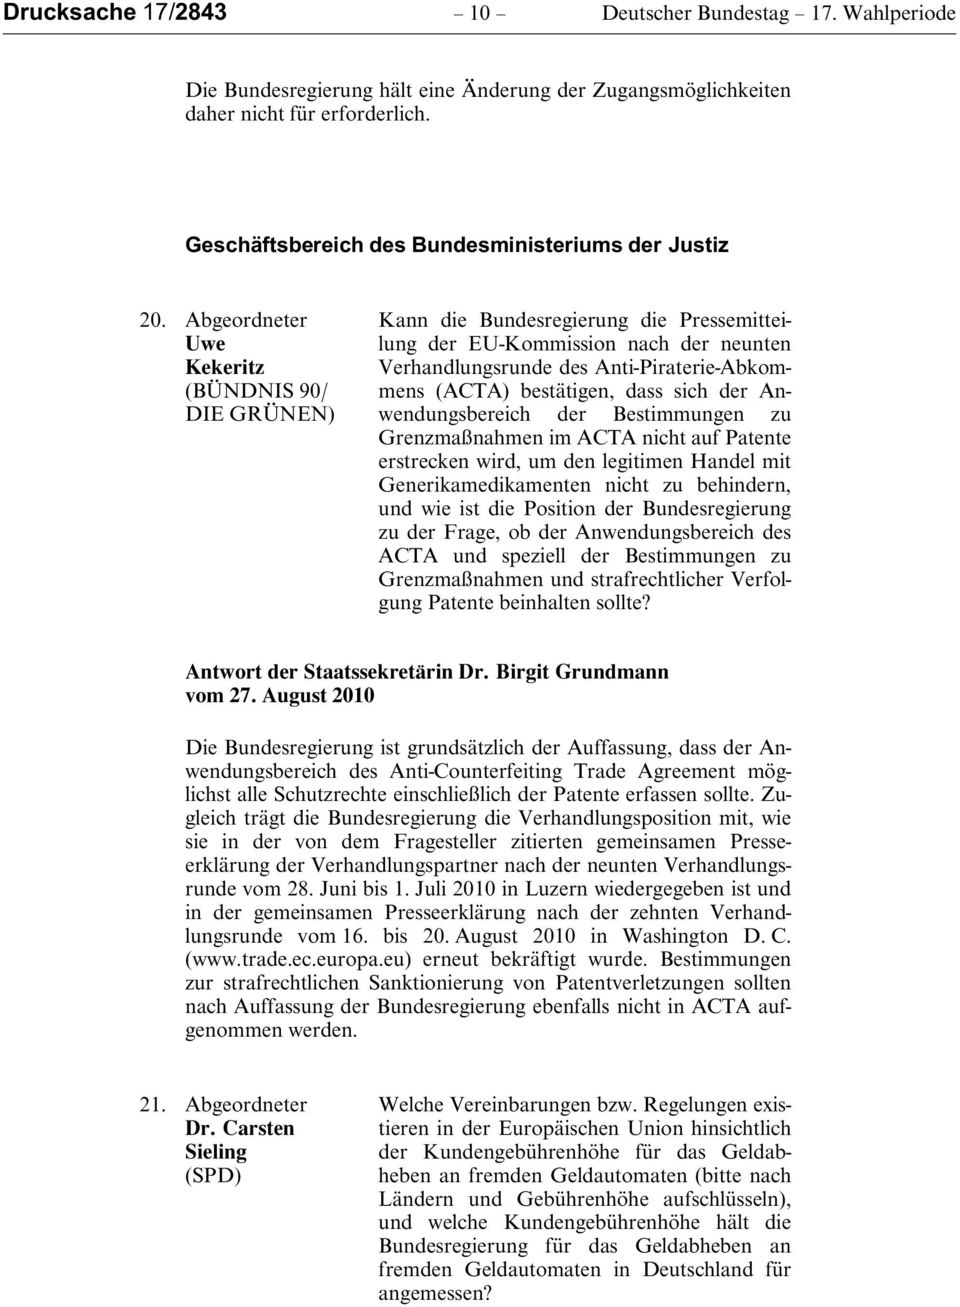 Abgeordneter Uwe Kekeritz (BÜNDNIS 90/ DIE GRÜNEN) Kann die Bundesregierung die Pressemitteilung der EU-Kommission nach der neunten Verhandlungsrunde des Anti-Piraterie-Abkommens (ACTA) bestätigen,